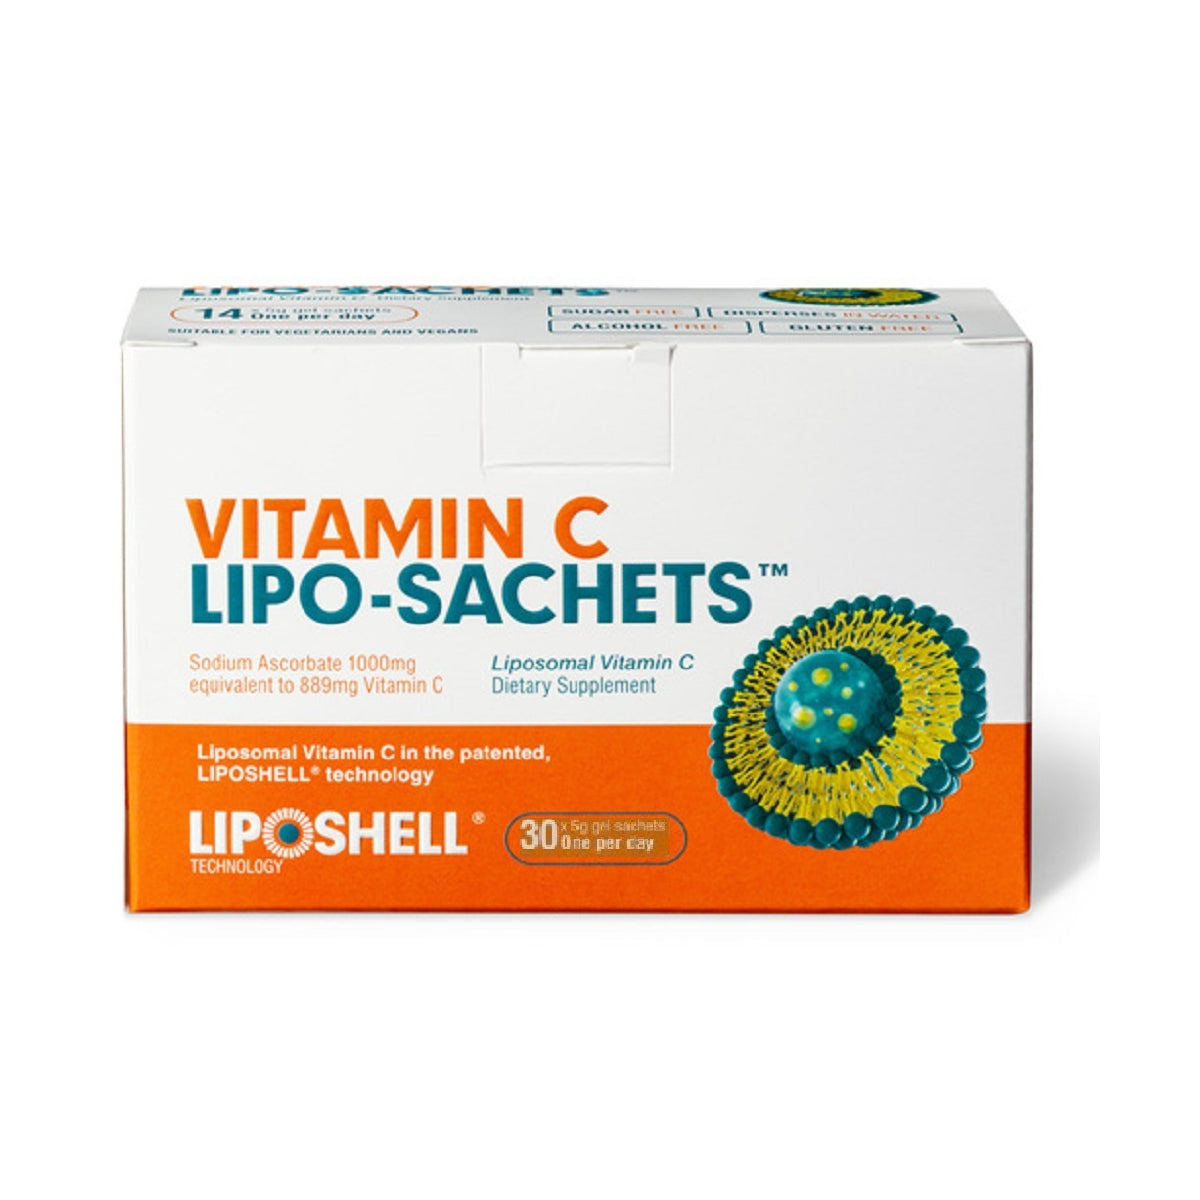 Vitamin C Lipo-Sachets Liposomal Vitamin C